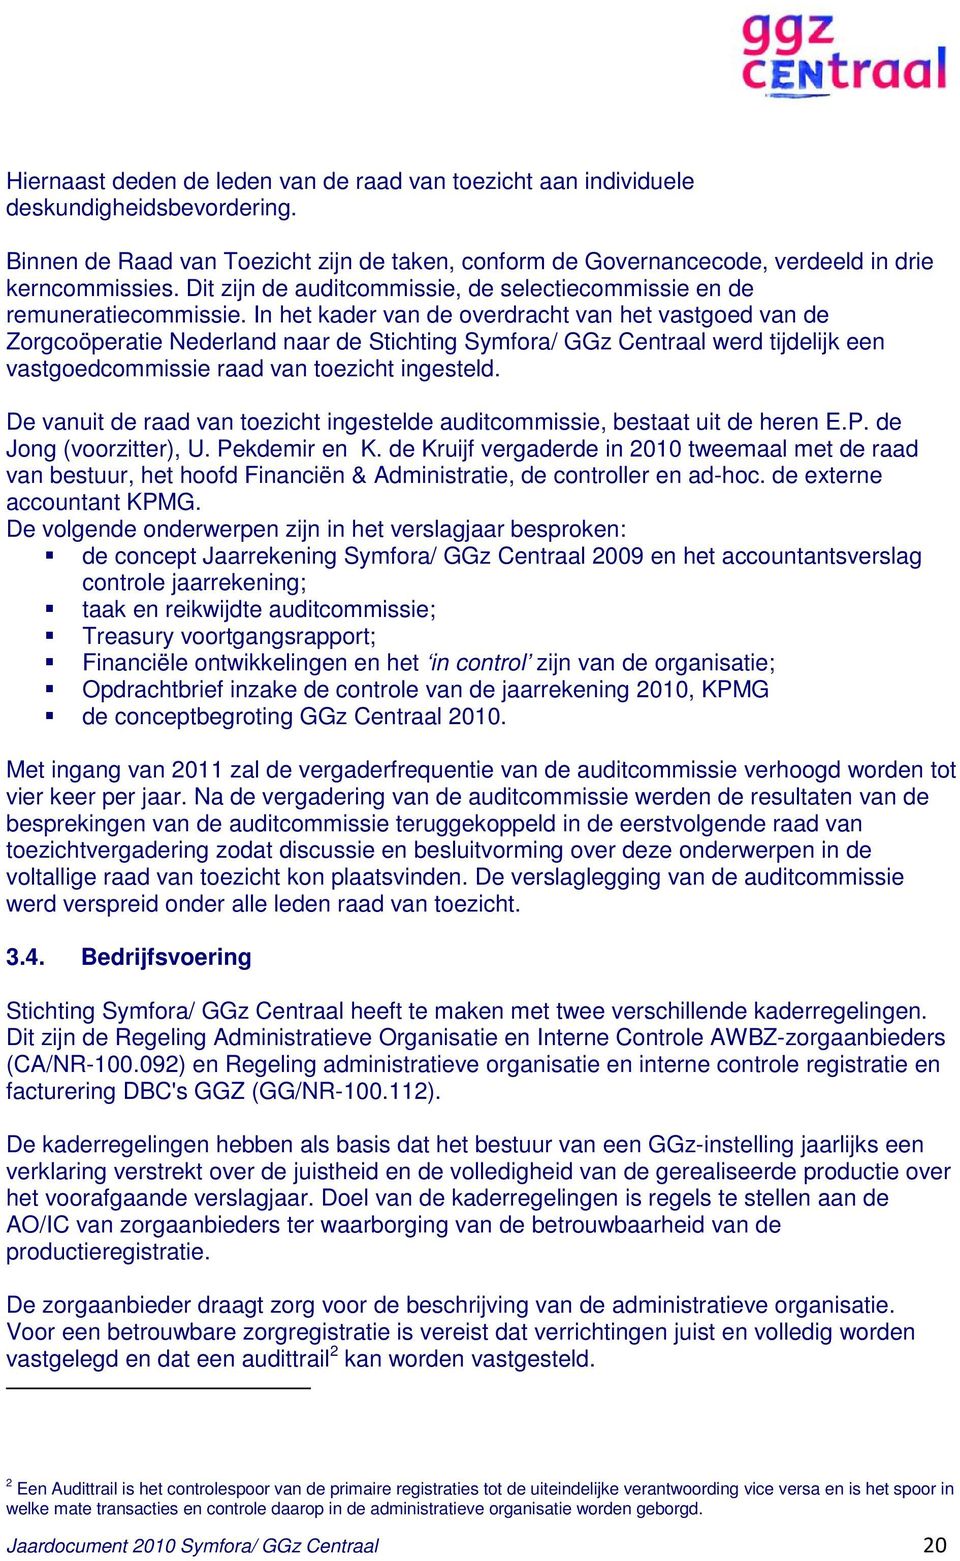 In het kader van de overdracht van het vastgoed van de Zorgcoöperatie Nederland naar de Stichting Symfora/ GGz Centraal werd tijdelijk een vastgoedcommissie raad van toezicht ingesteld.